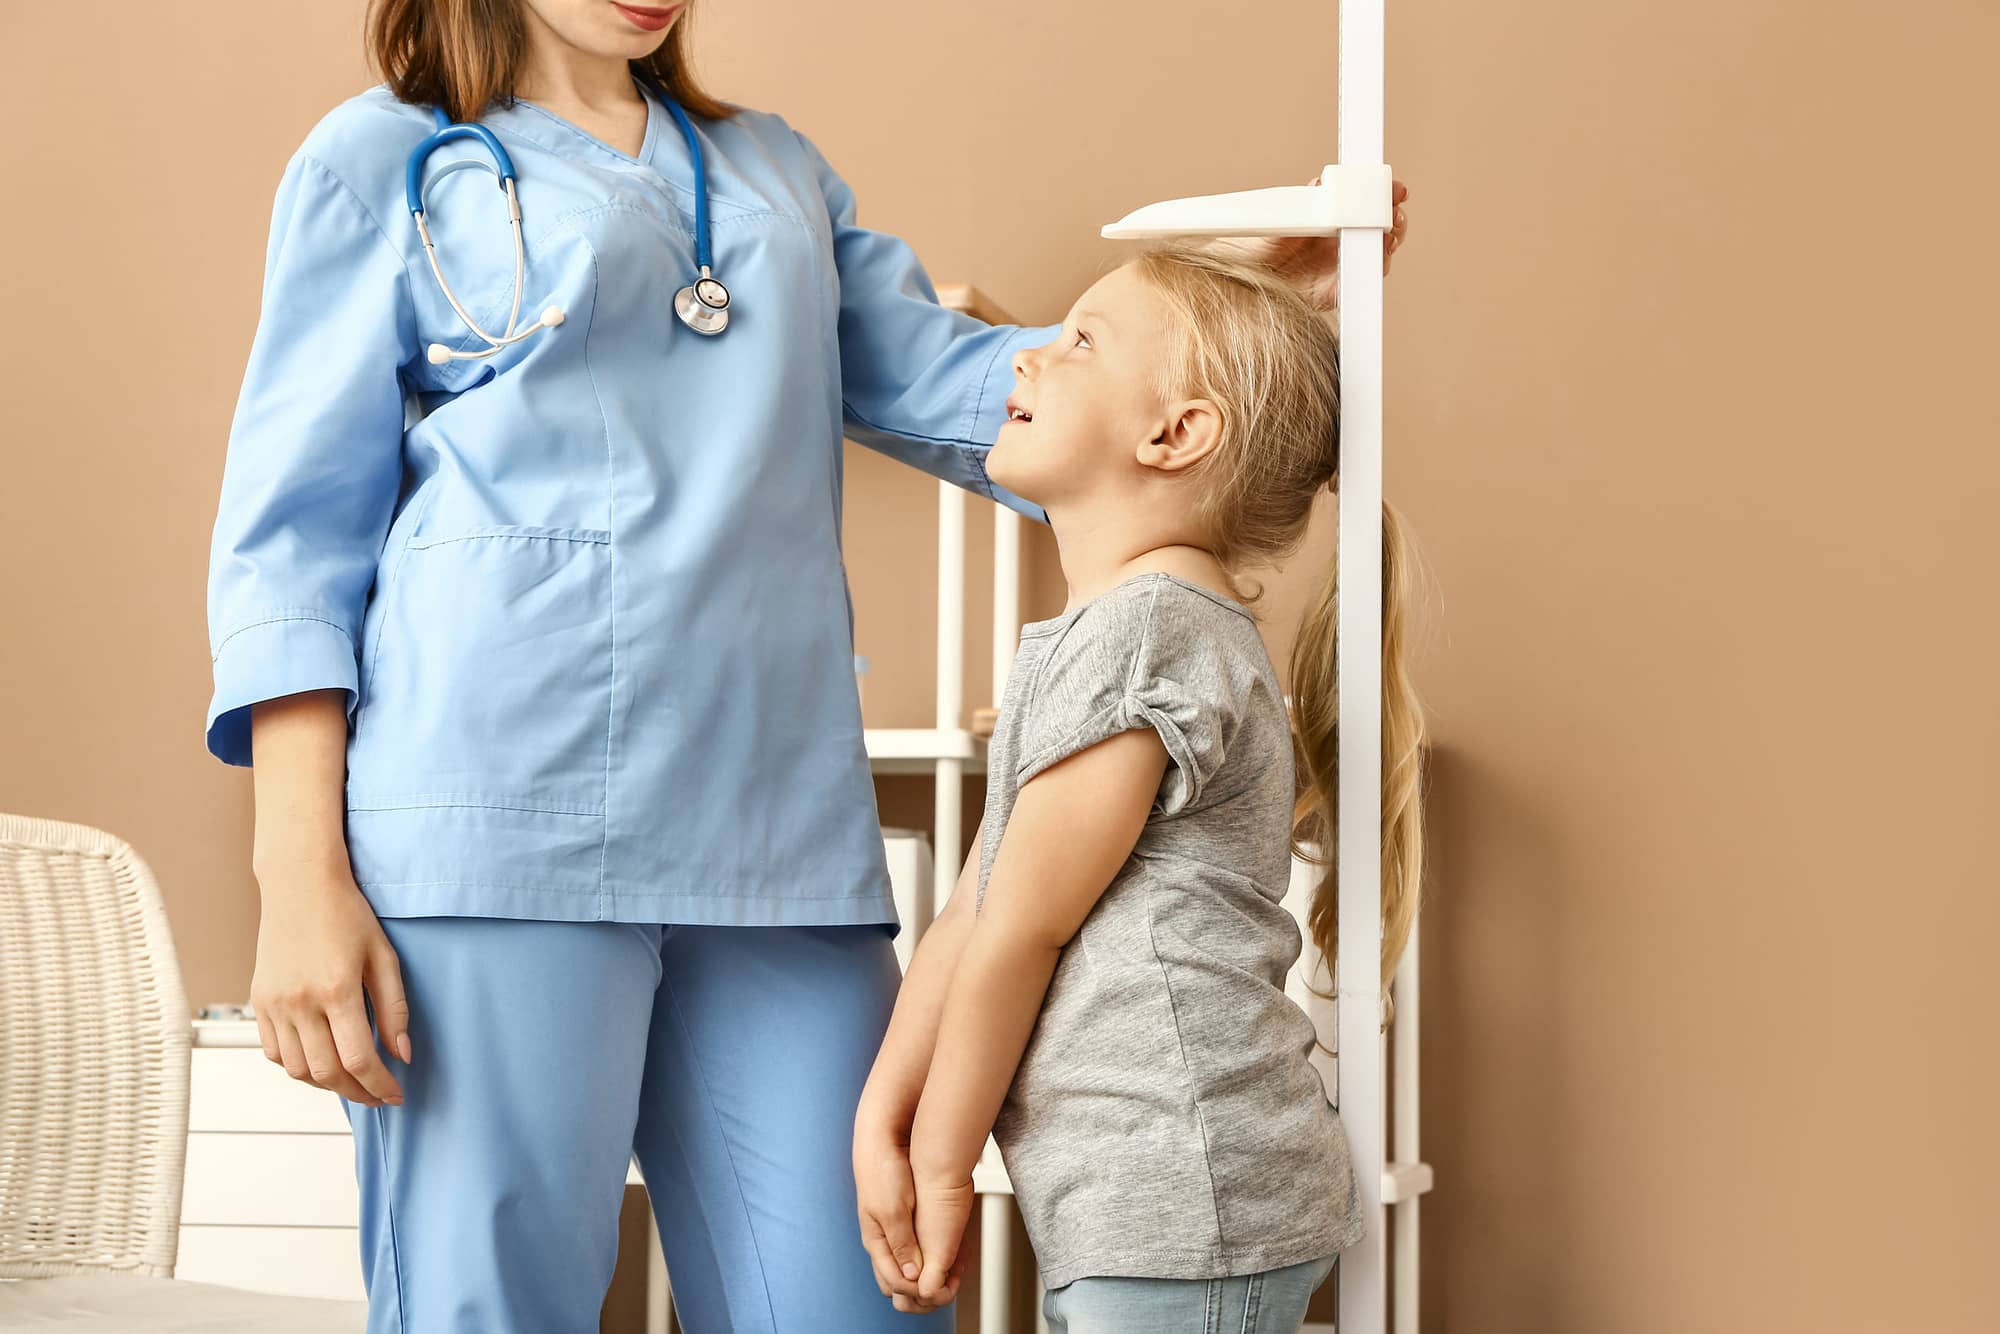 Female nurse measuring height of little girl in hospital